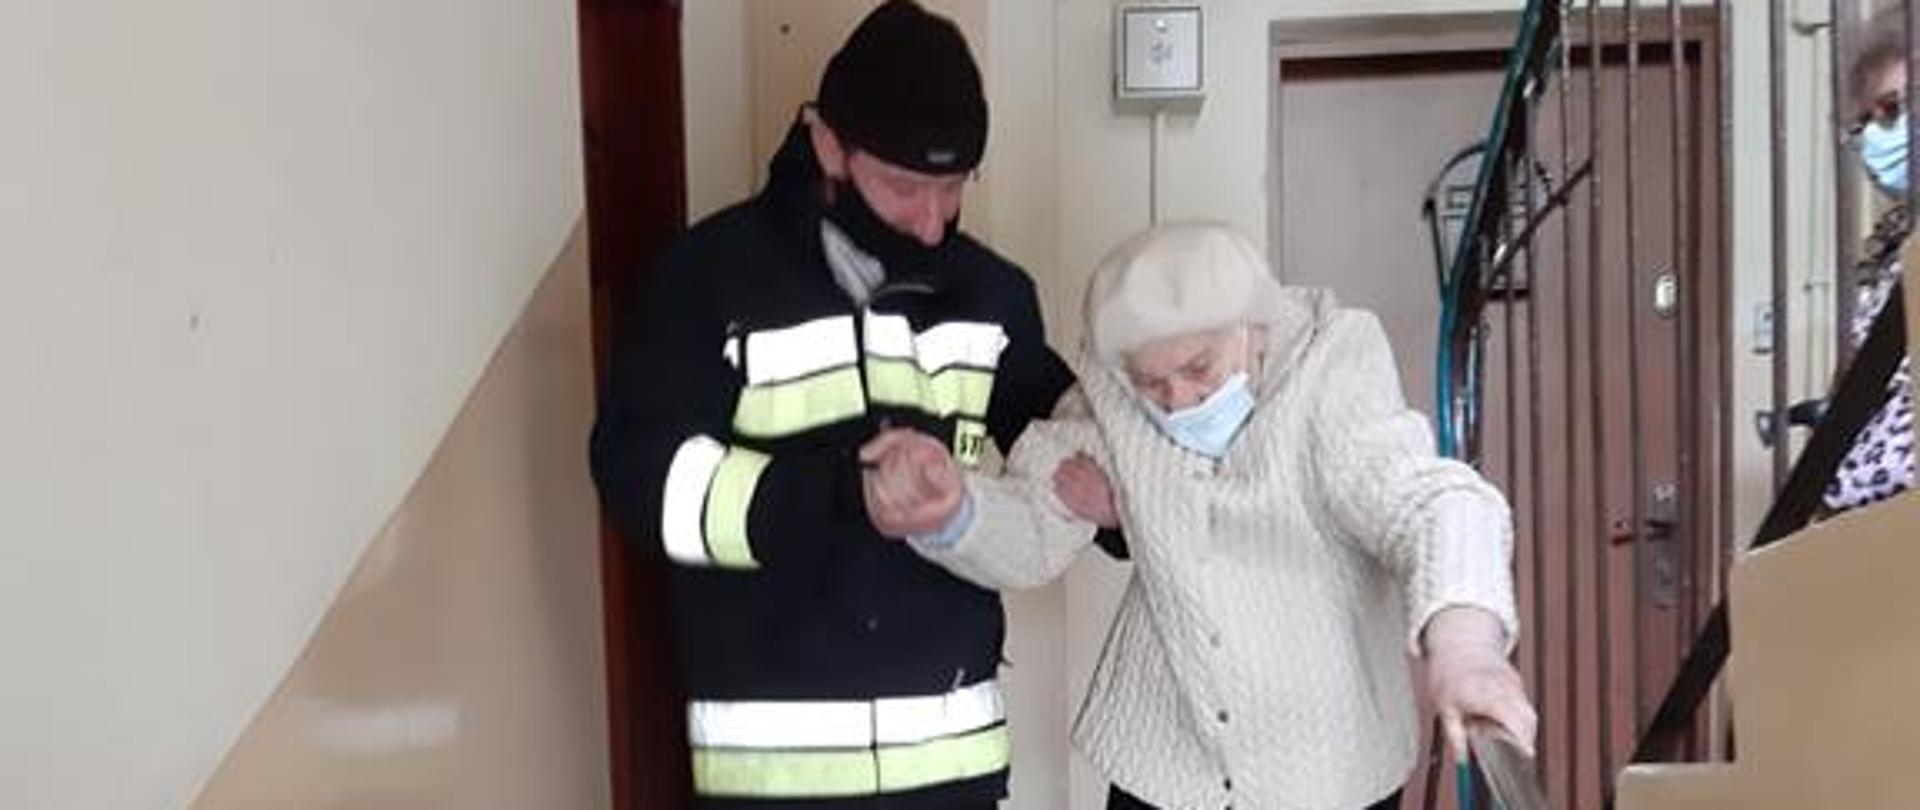 Strażak ratownik w ubraniu specjalnym pomaga starszej kobiecie zejść po klatce schodowej. Kobieta przytrzymuje się lewą ręką poręczy a drugą jest asekurowana przez strażaka